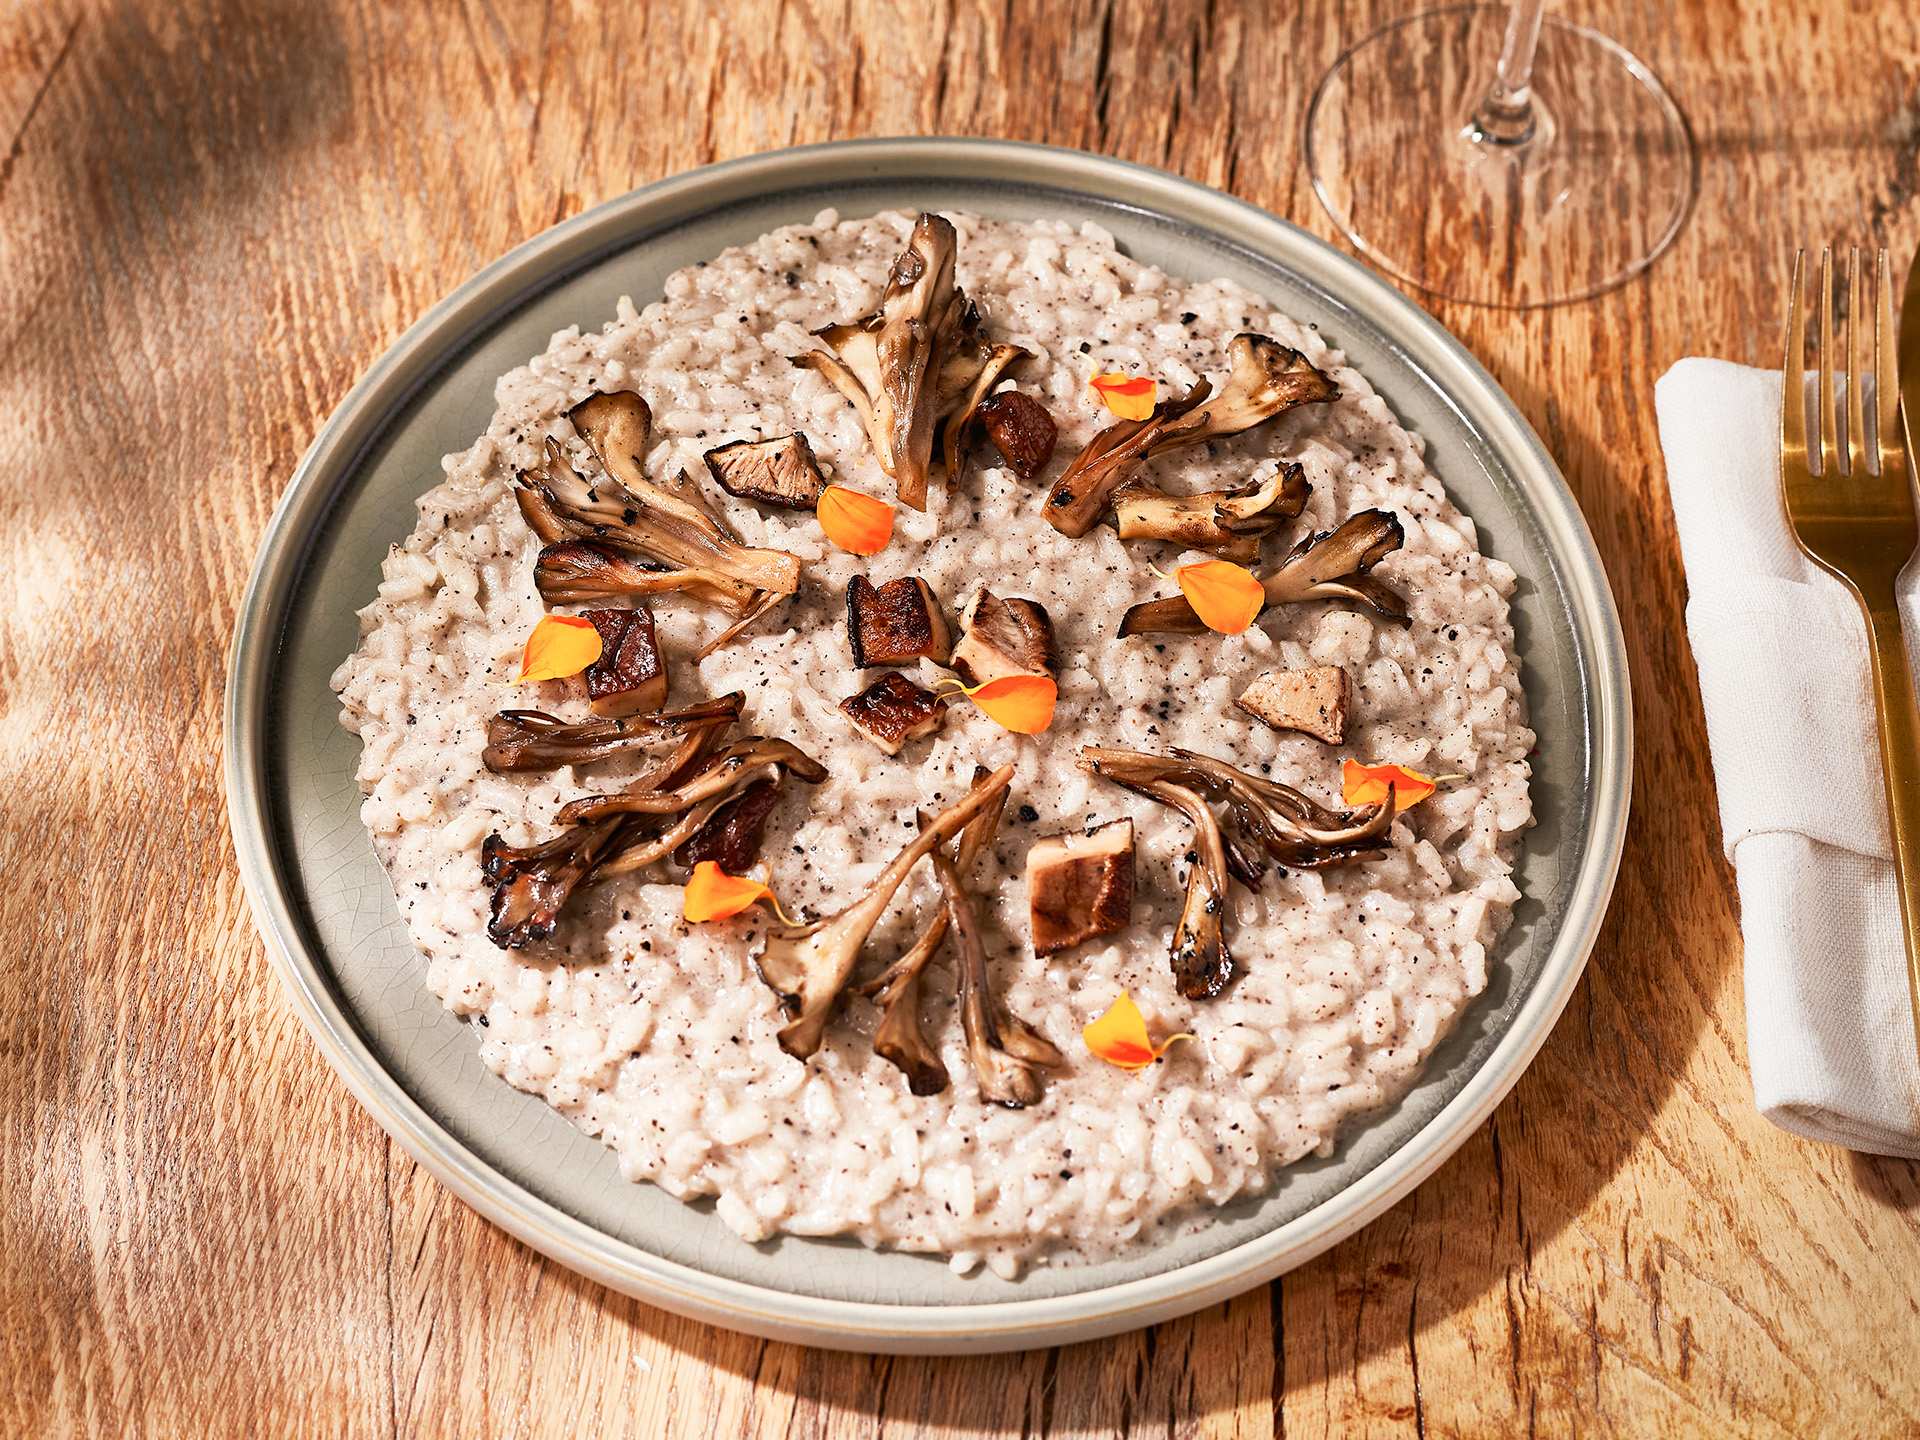 Casa Madera | Vegan mushroom risotto at Casa Madera